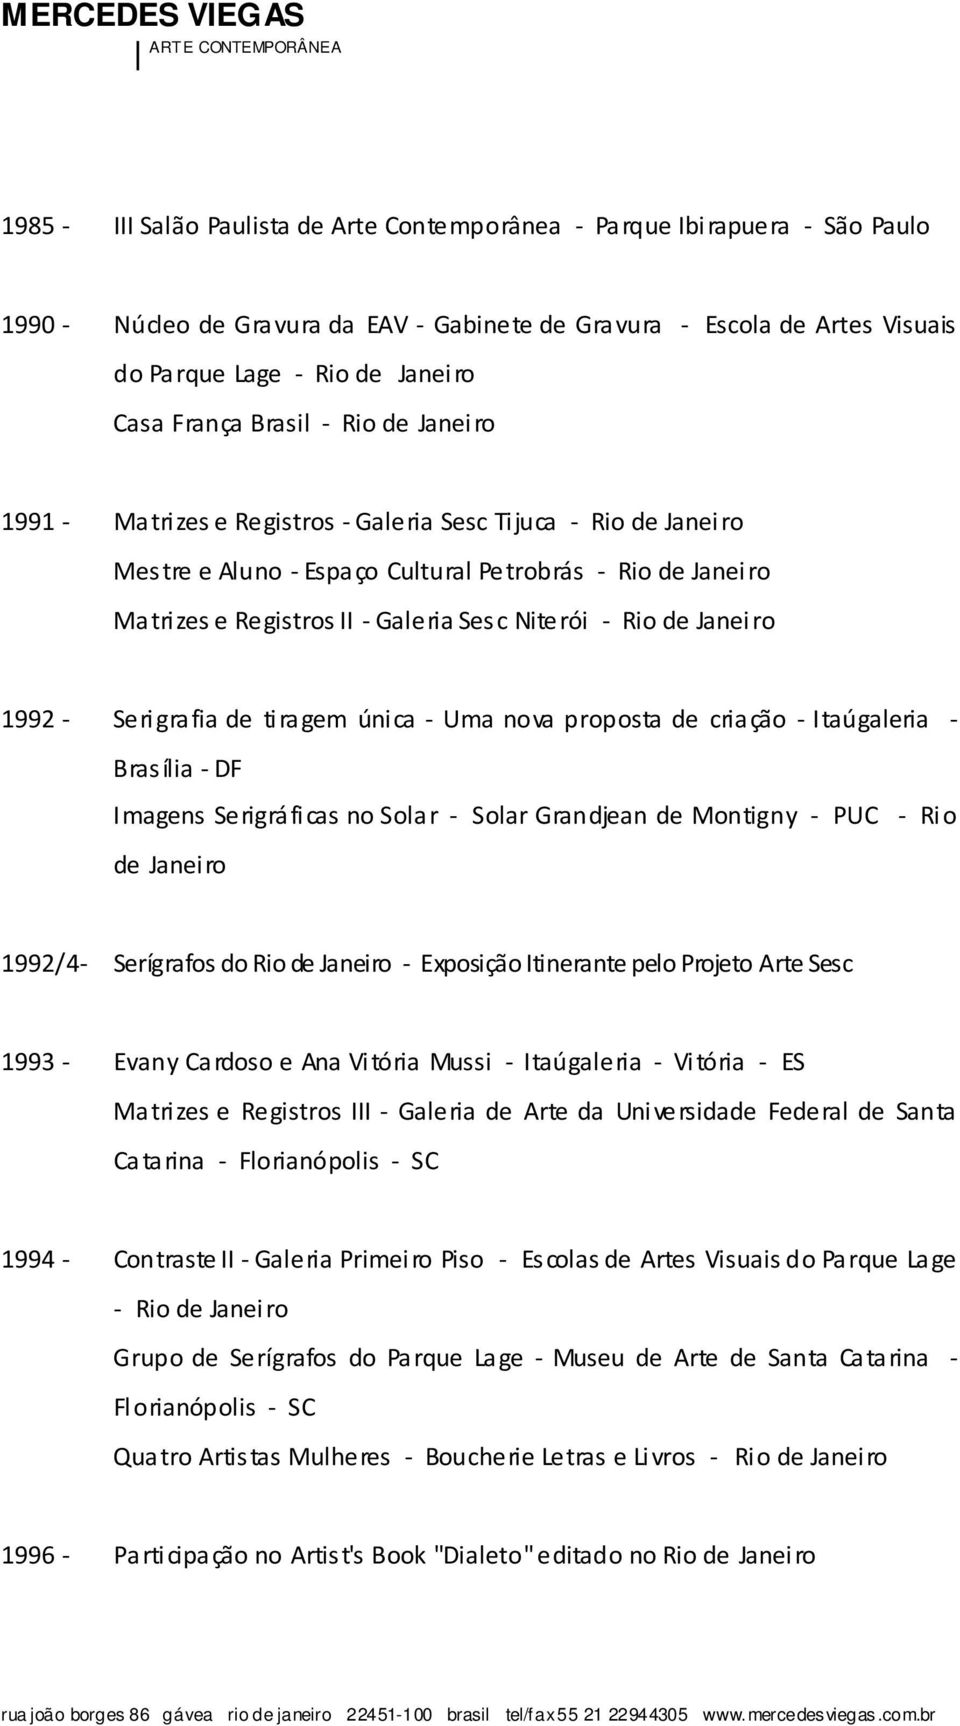 Niterói - Rio de Janeiro 1992 - Serigrafia de tiragem única - Uma nova proposta de criação - Itaúgaleria - Brasília - DF Imagens Serigráficas no Solar - Solar Grandjean de Montigny - PUC - Rio de